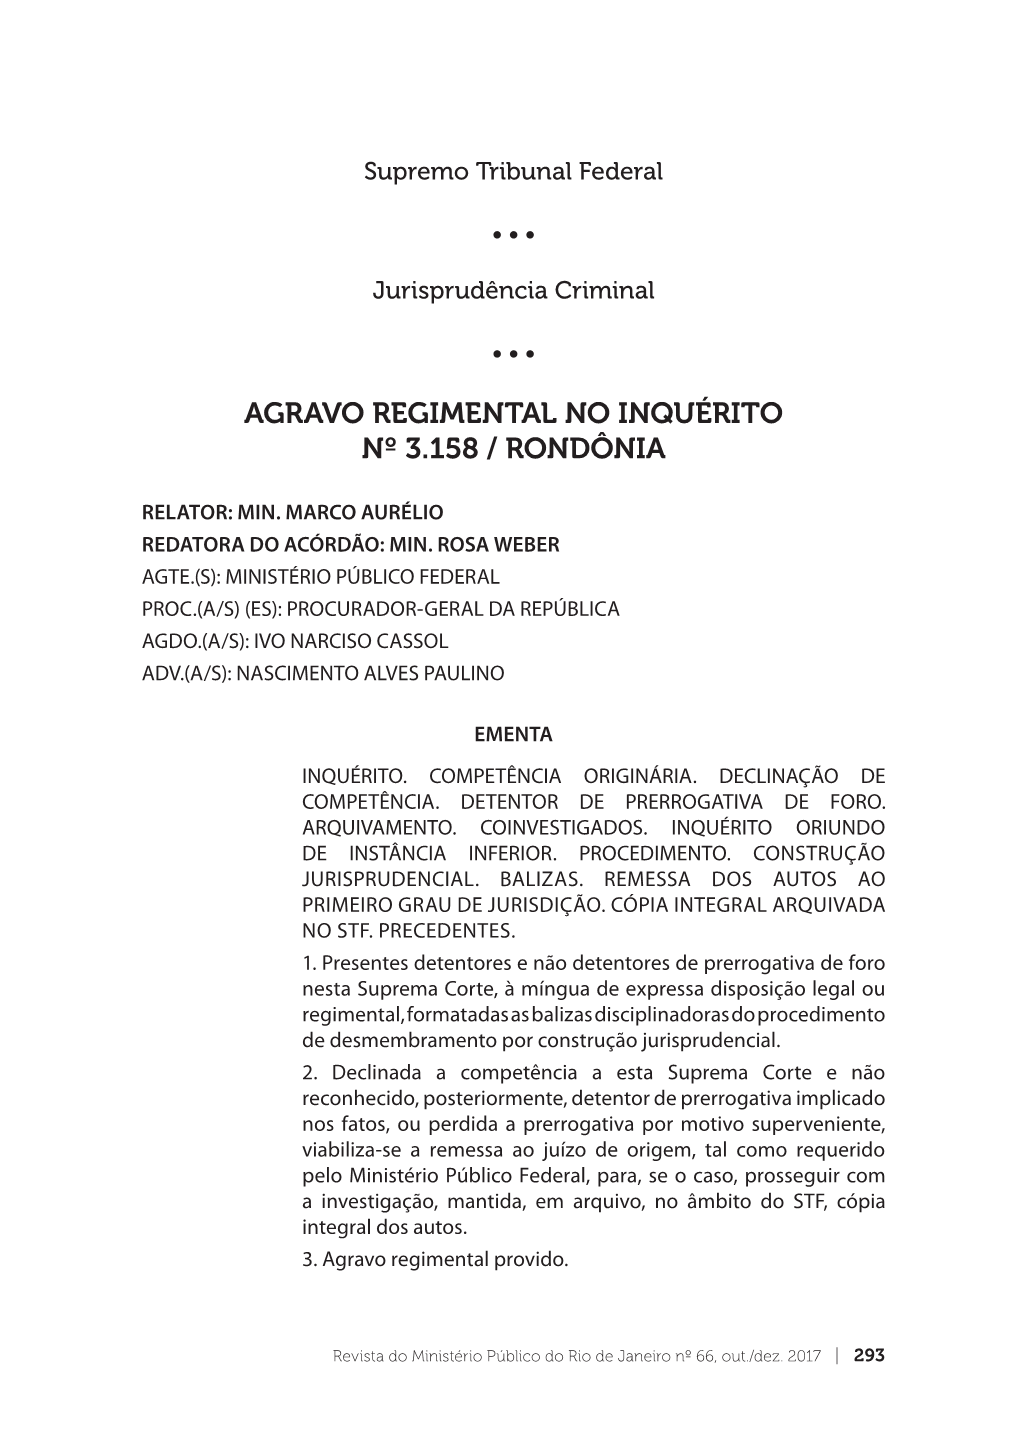 Agravo Regimental No Inquérito Nº 3.158 / Rondônia